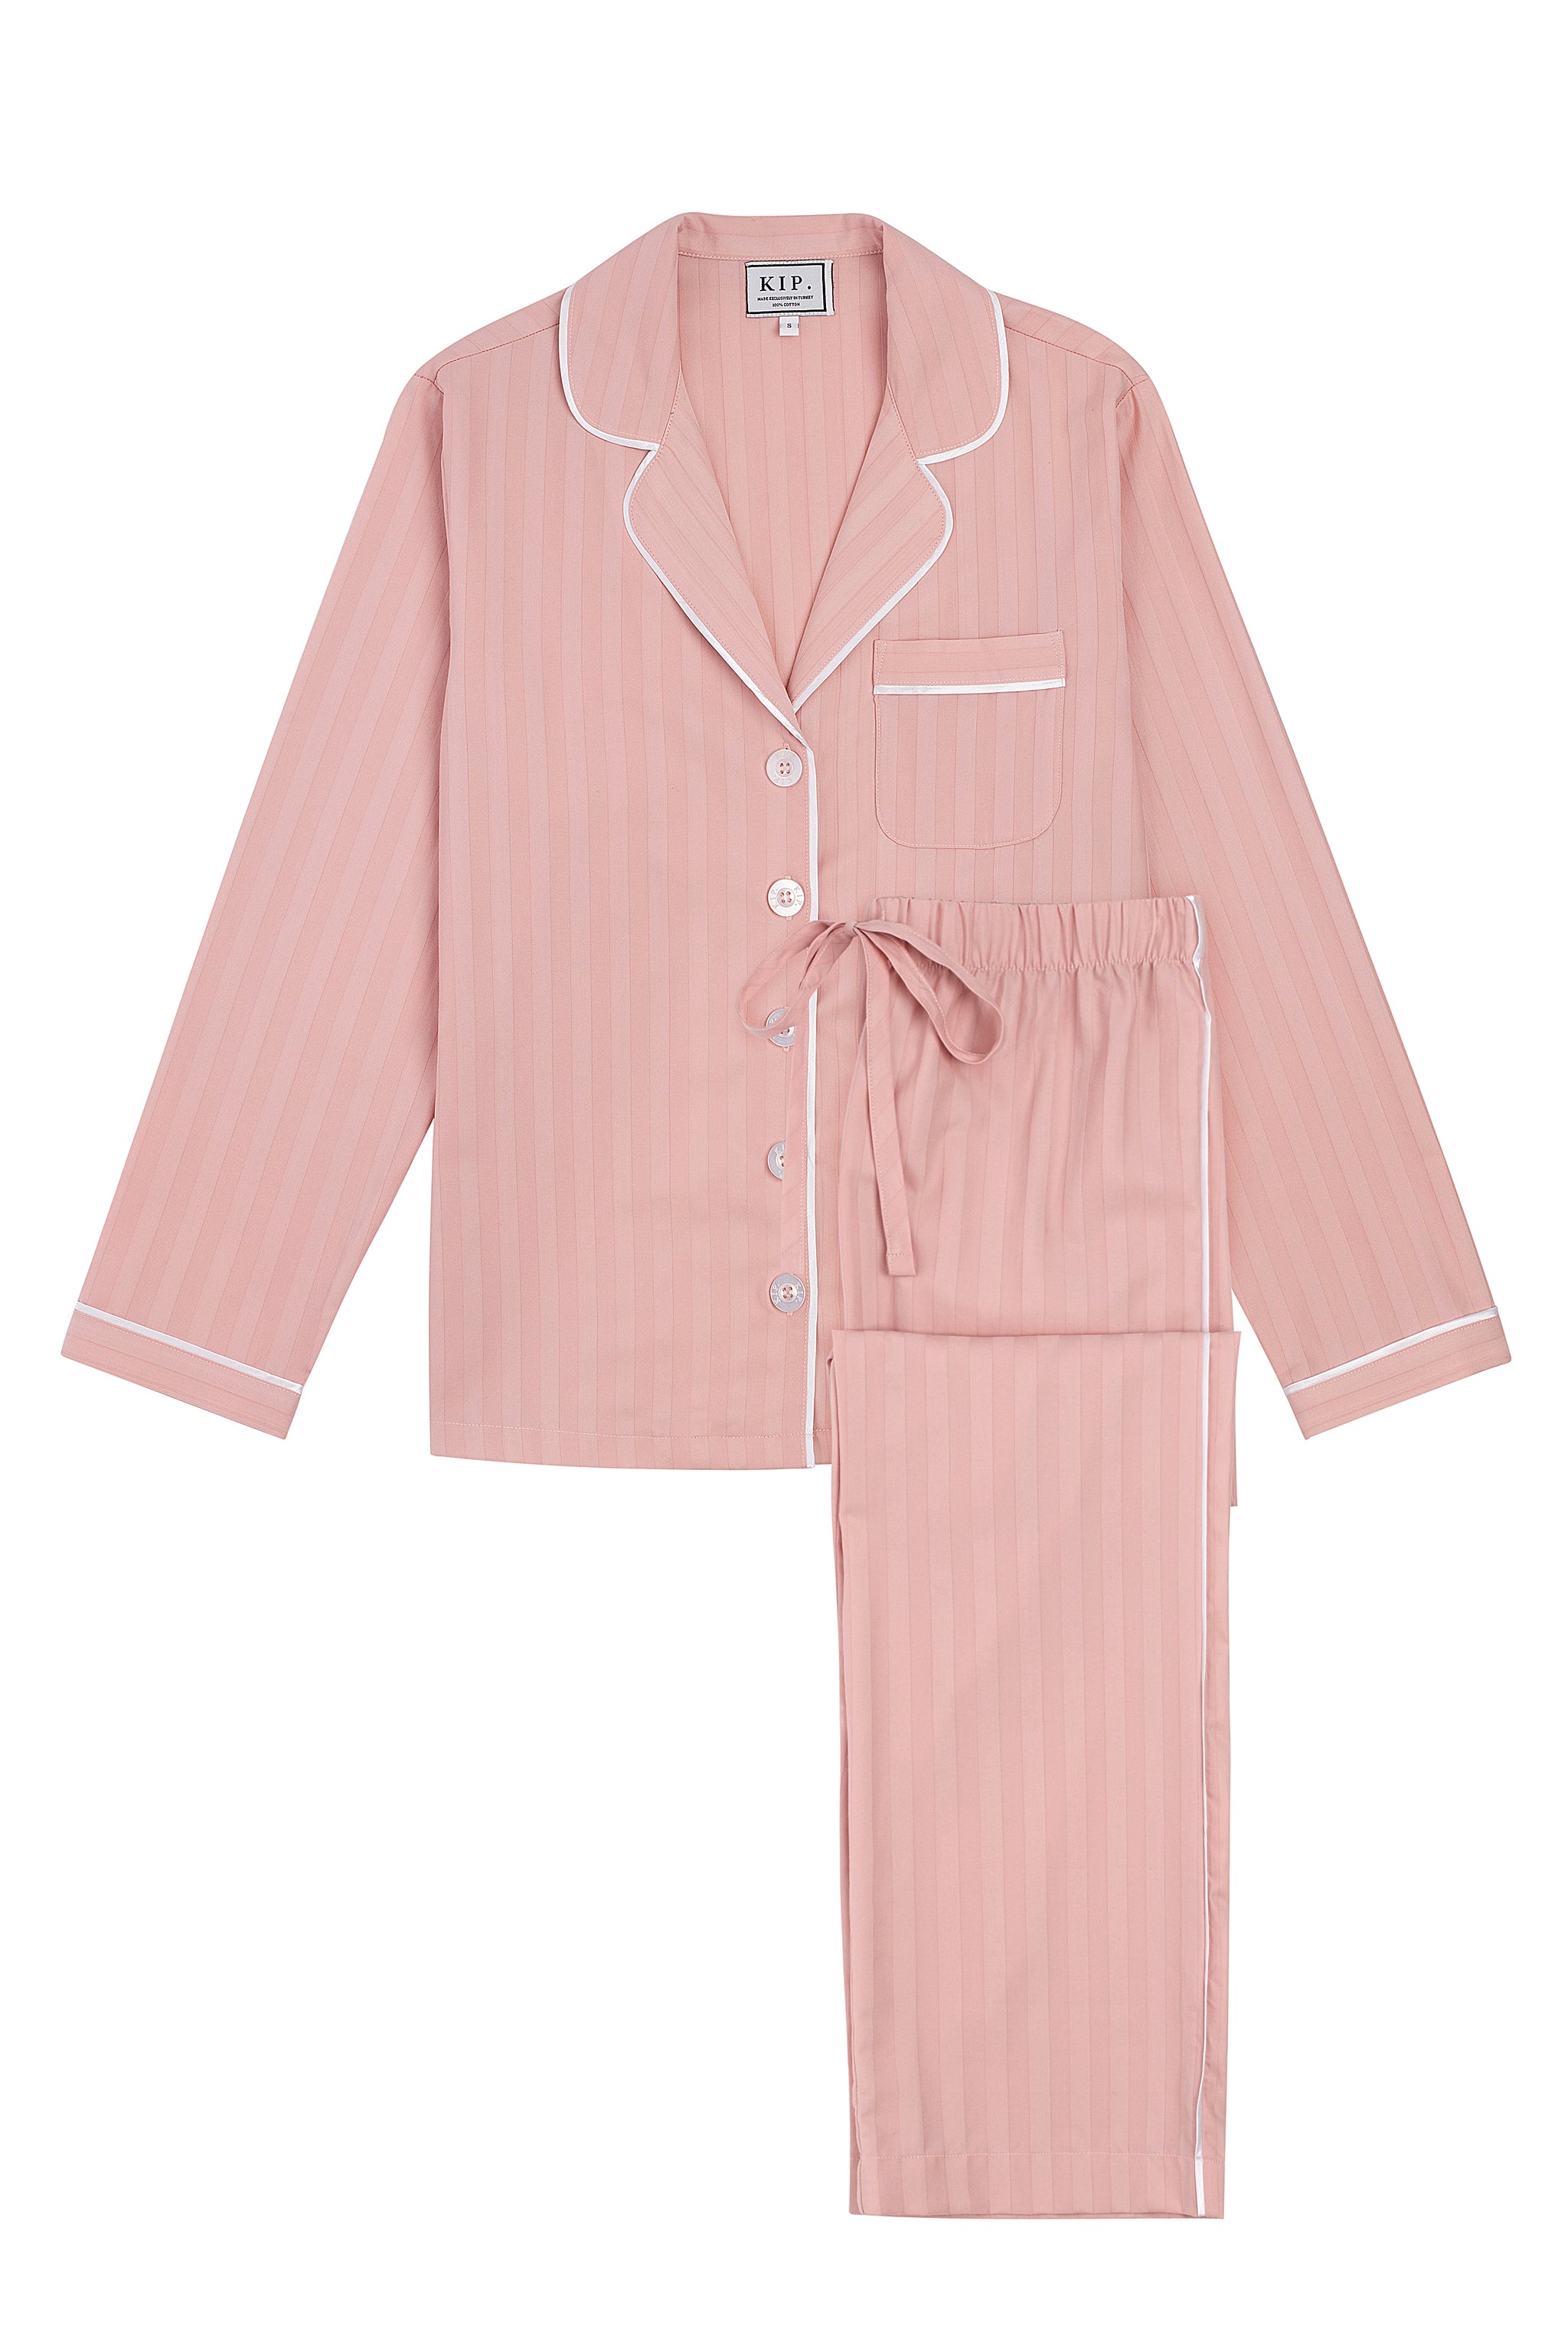  HONGFEI-SHOP Pijamas Sets 8 colores sexy pijama mujer